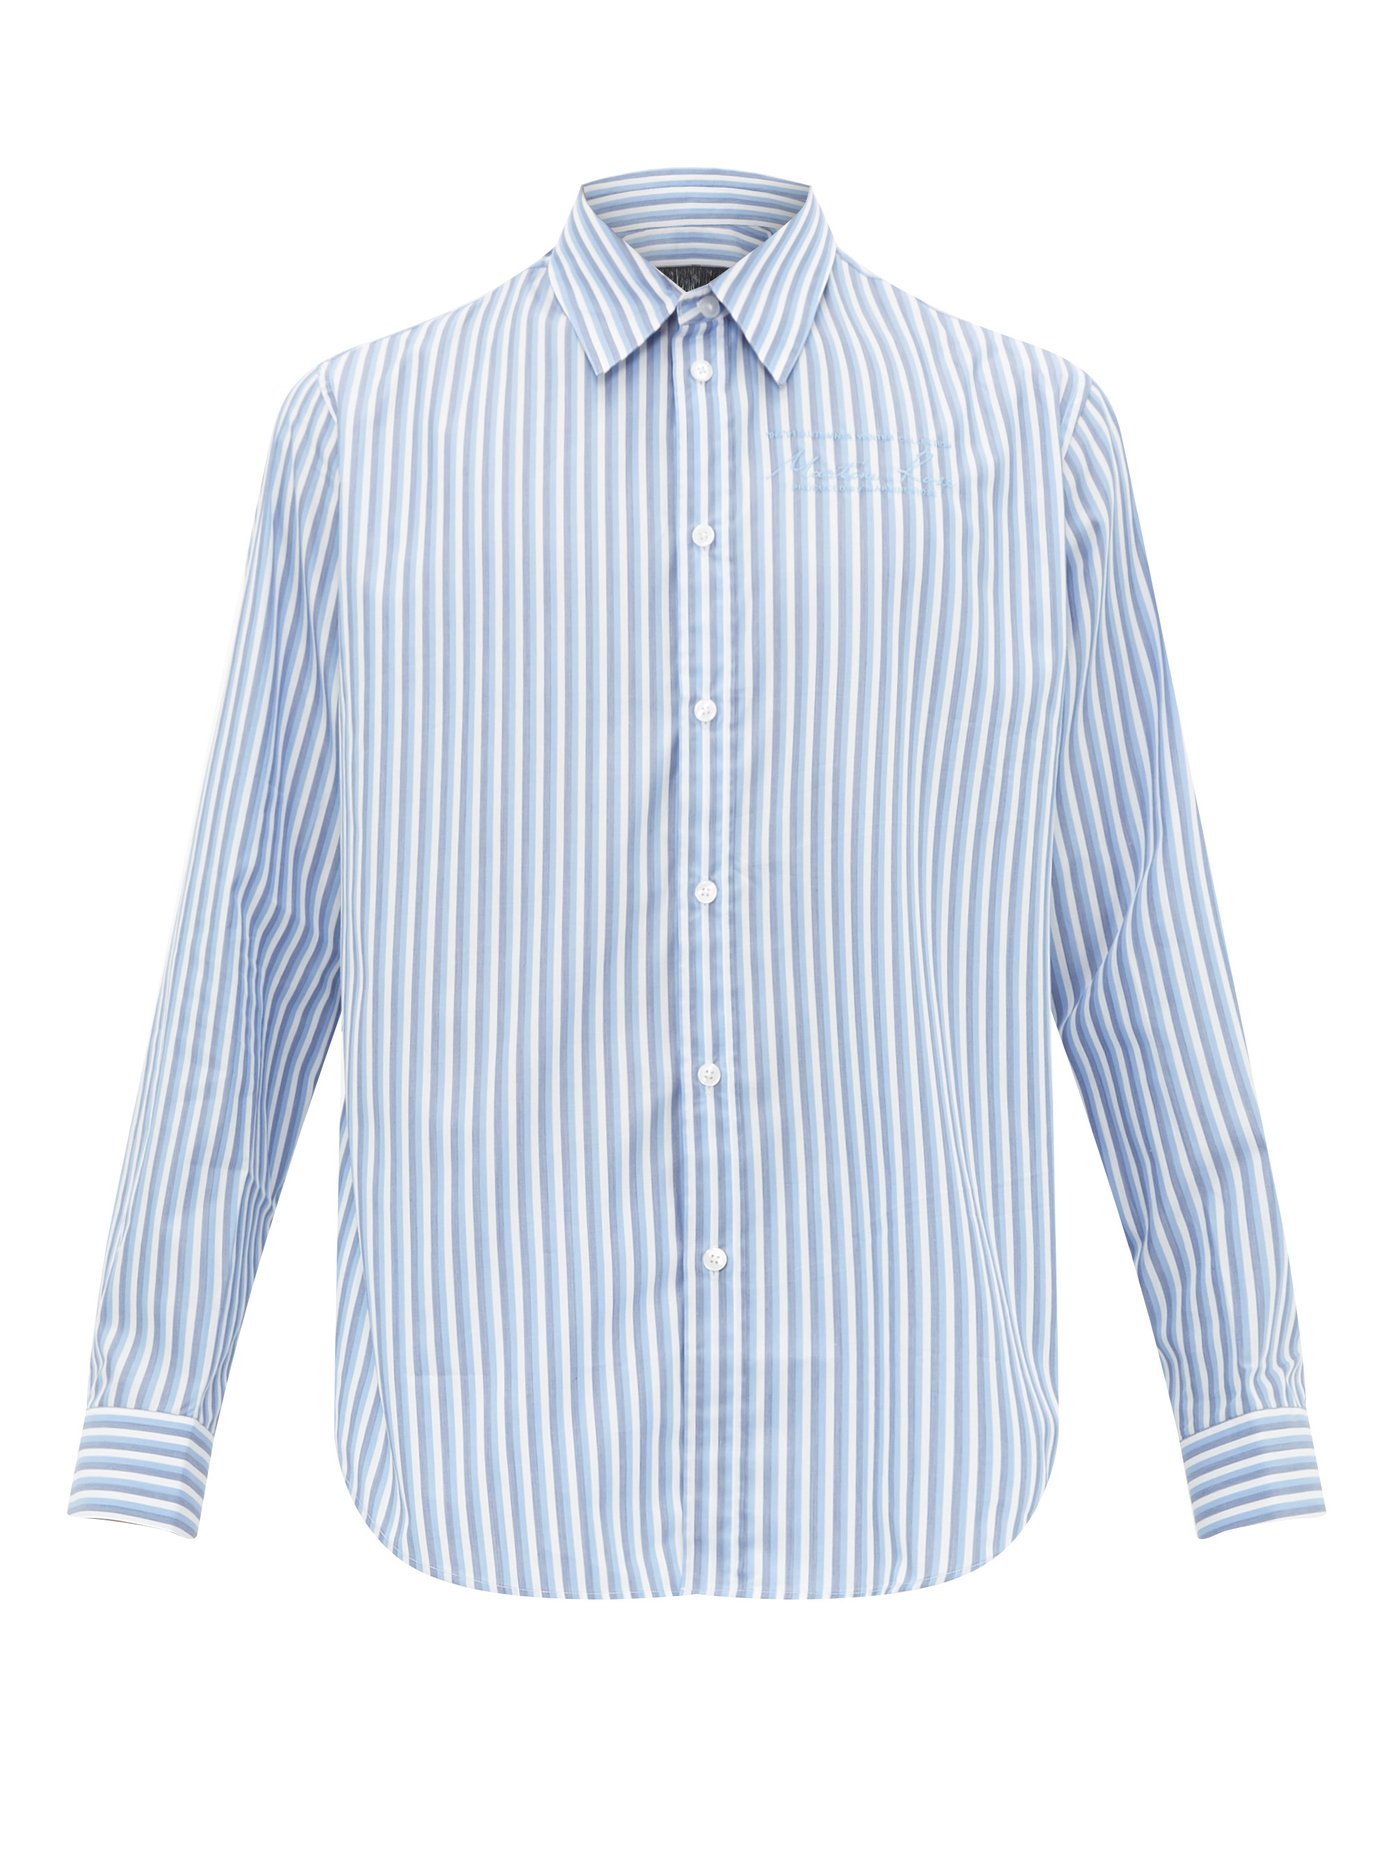 striped cotton oxford shirt